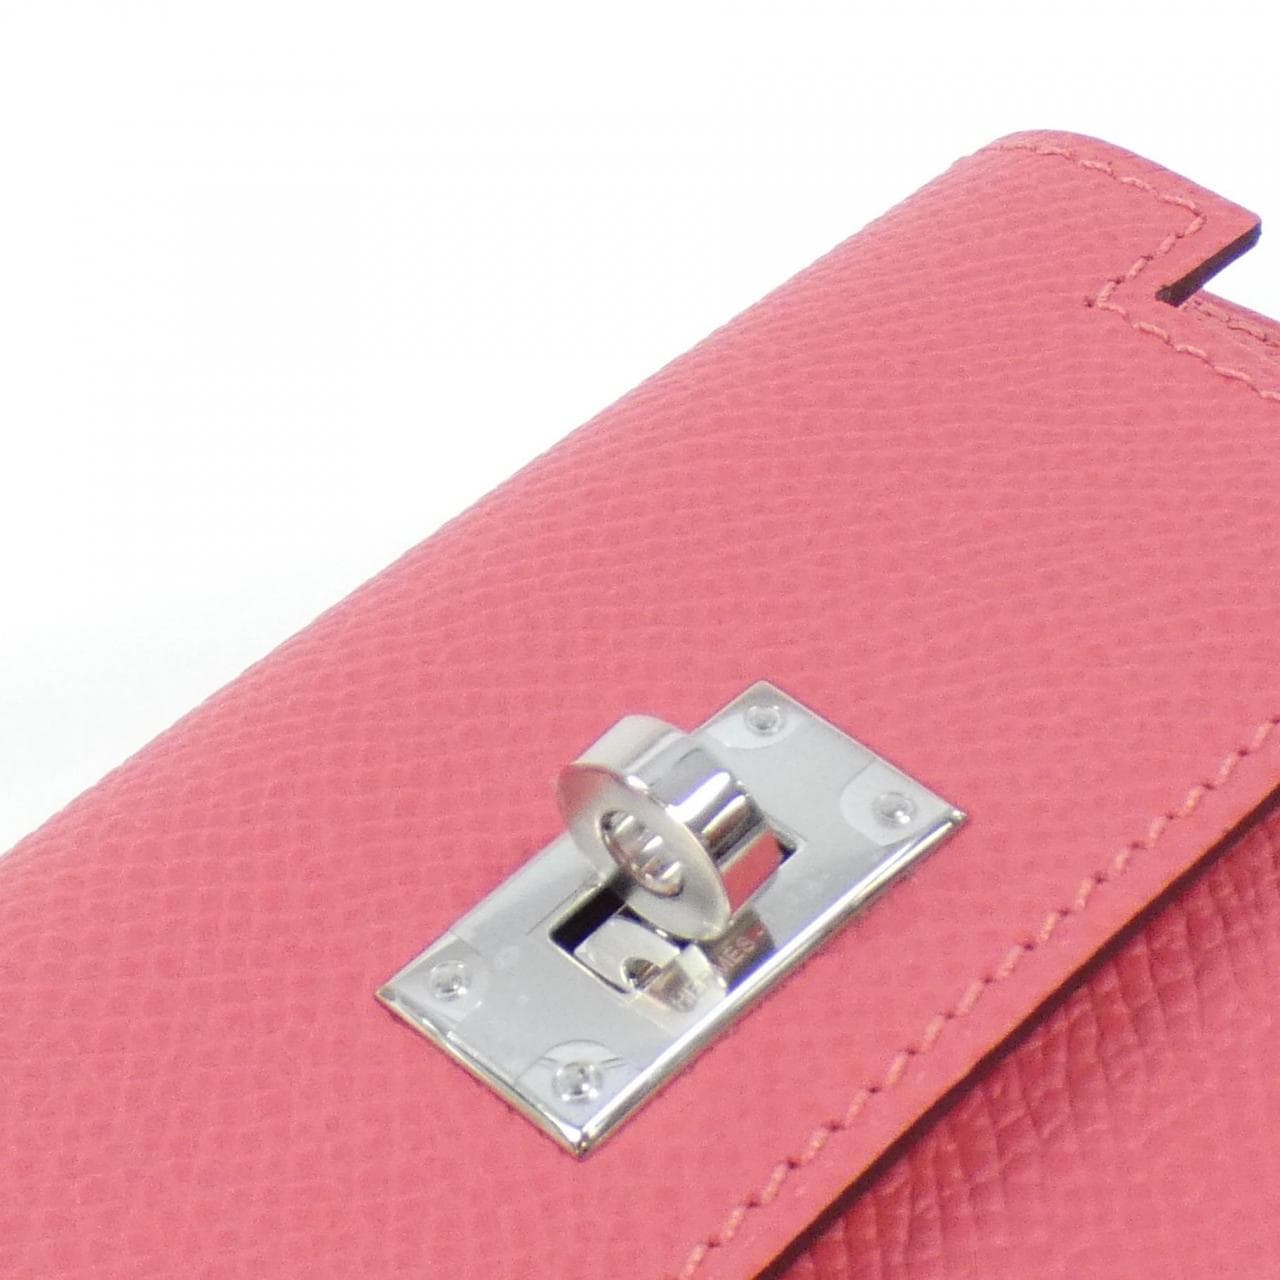 [Unused items] HERMES Kelly Pocket Compact 079001CK Wallet